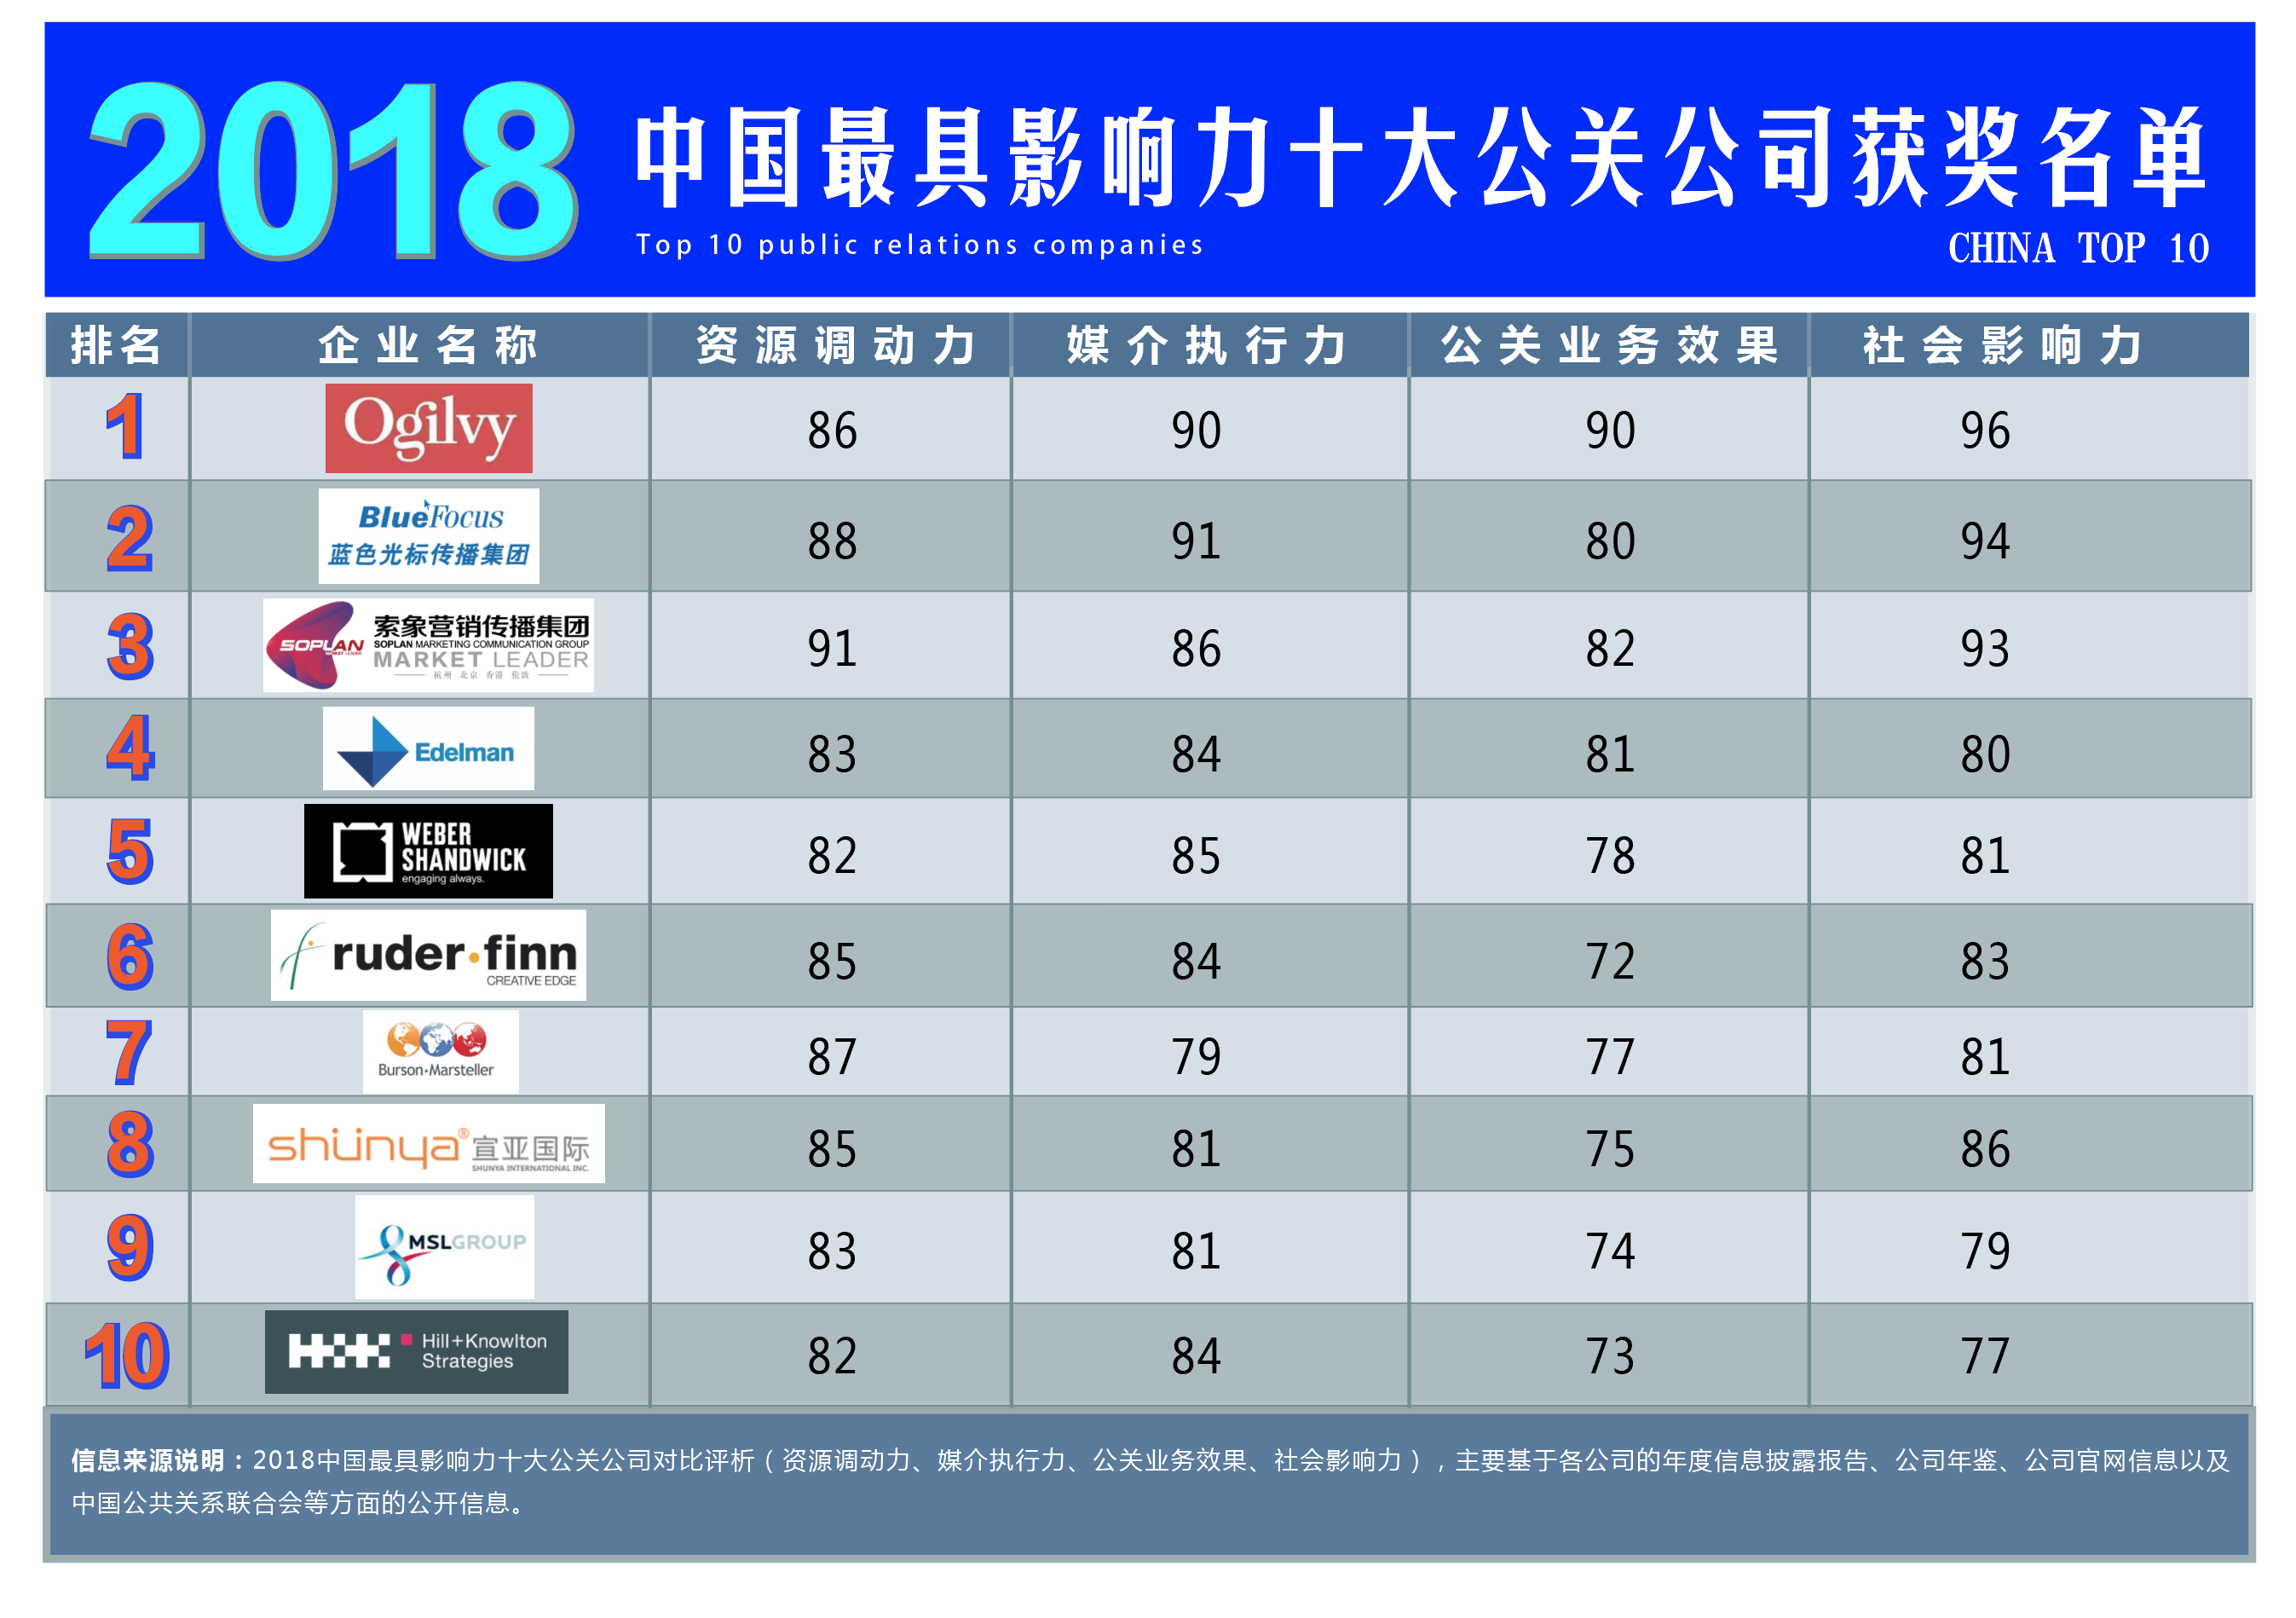 重磅!2018年中国最具影响力十大公关公司